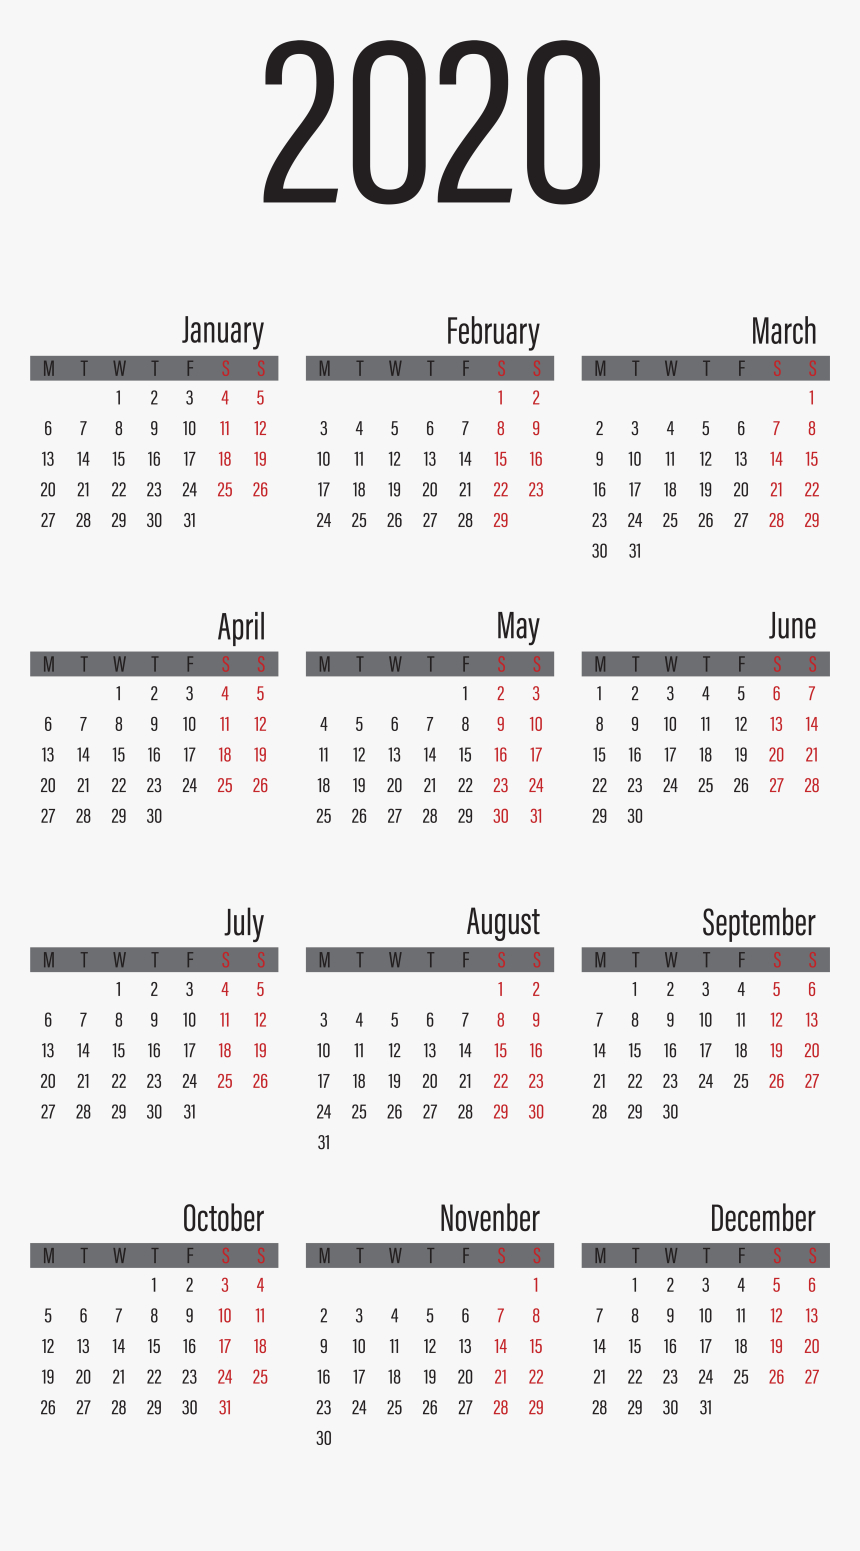 2020 Calendar Large Transparent Image - 2020 Year Calendar